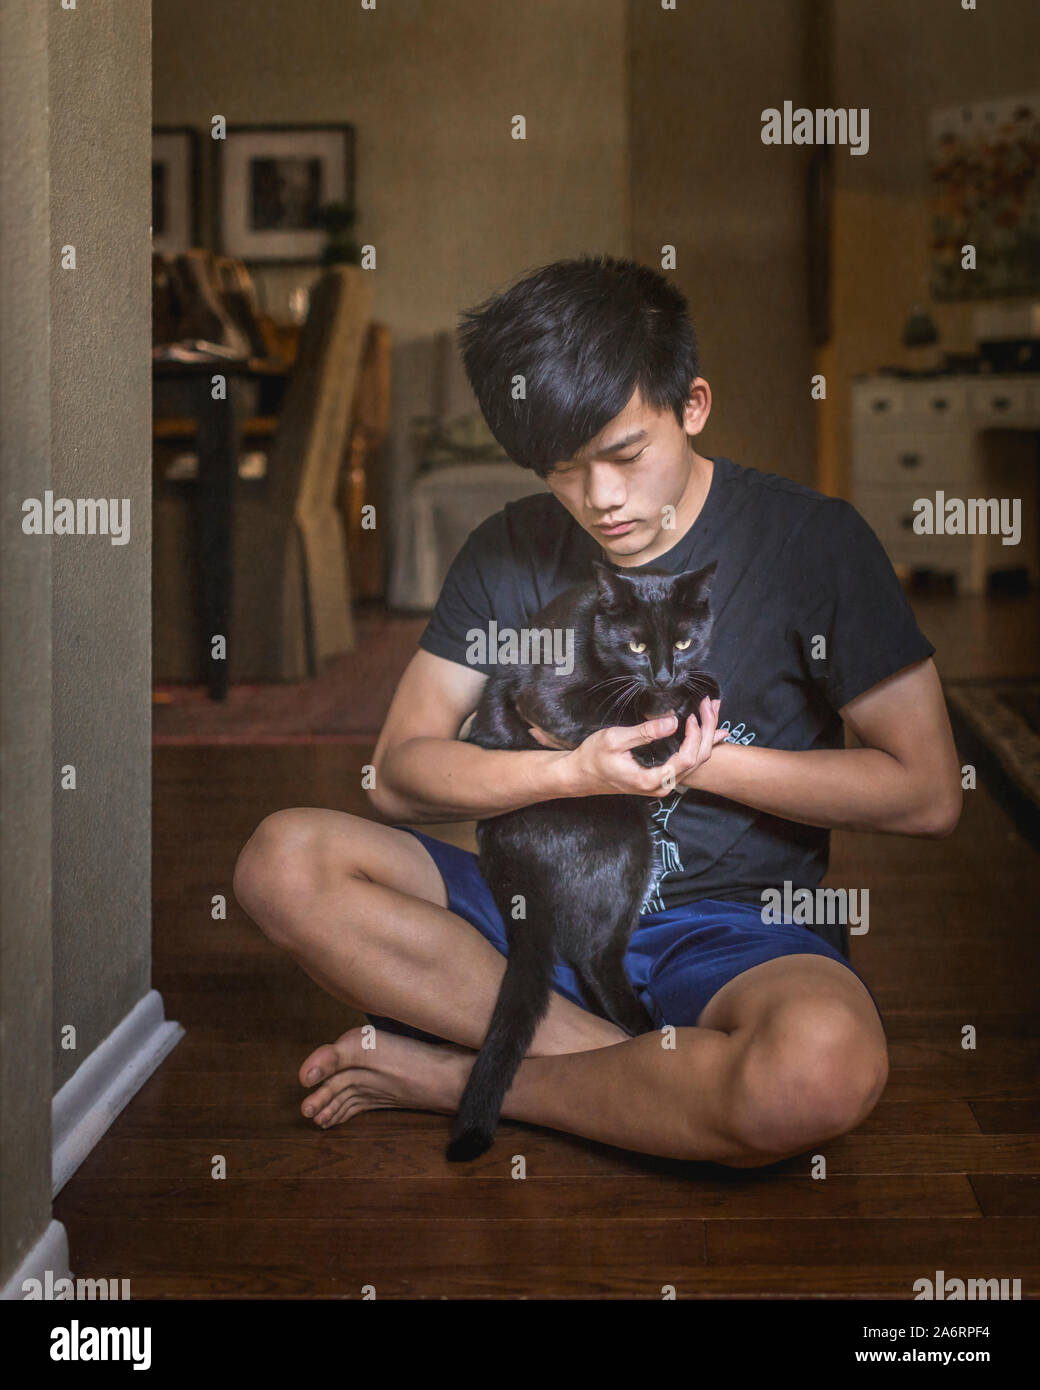 Garçon chinois asiatique joue avec chat noir assis sur le sol Banque D'Images